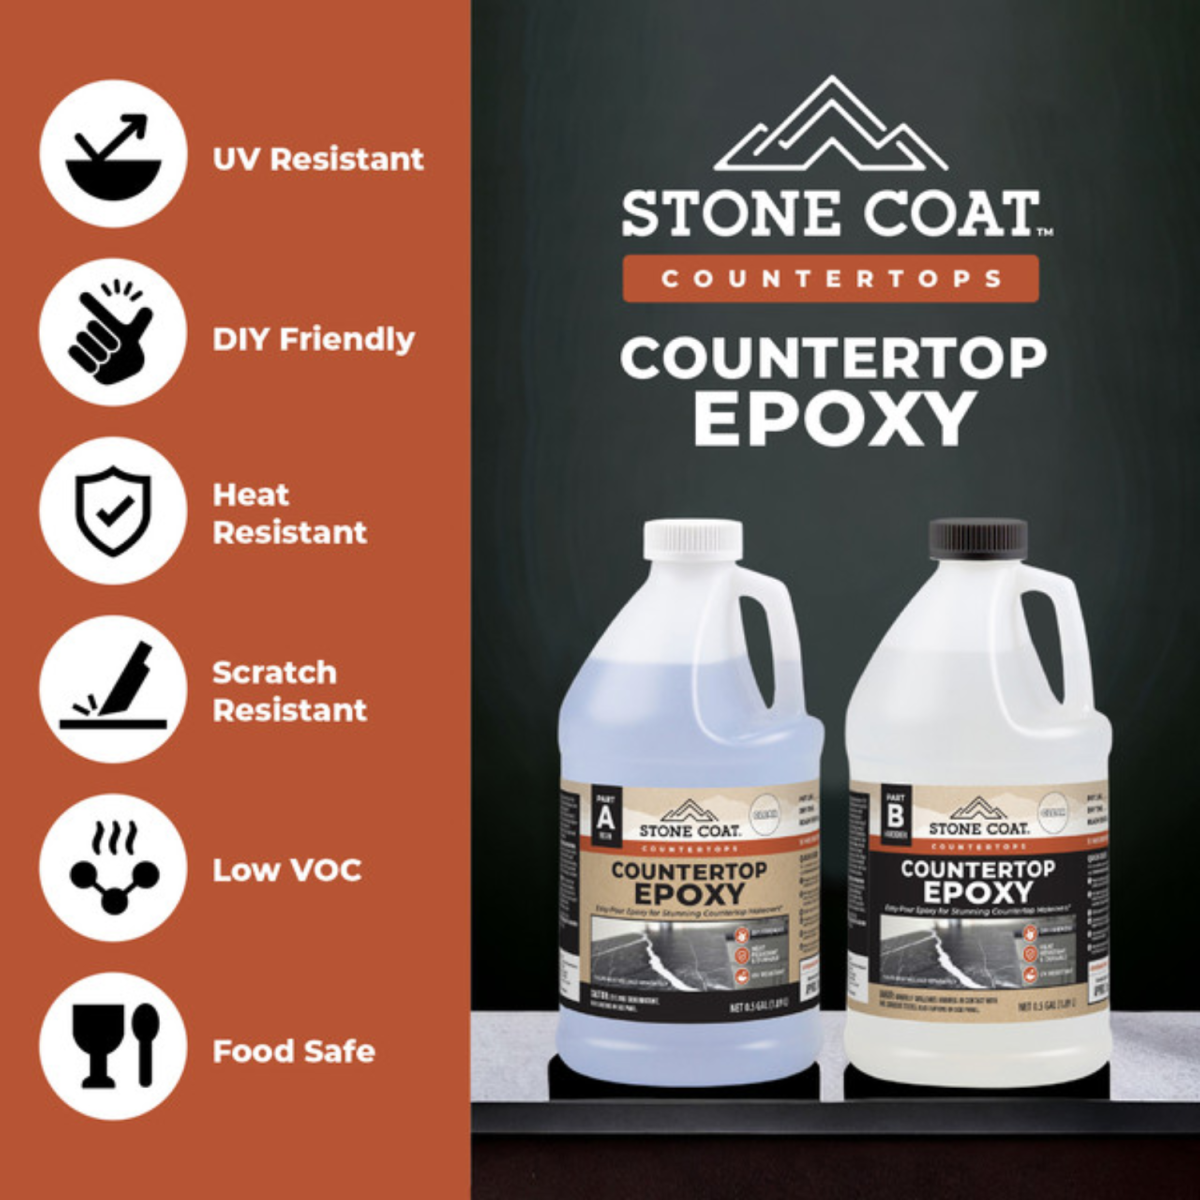 Stone Coat Countertop Epoxy